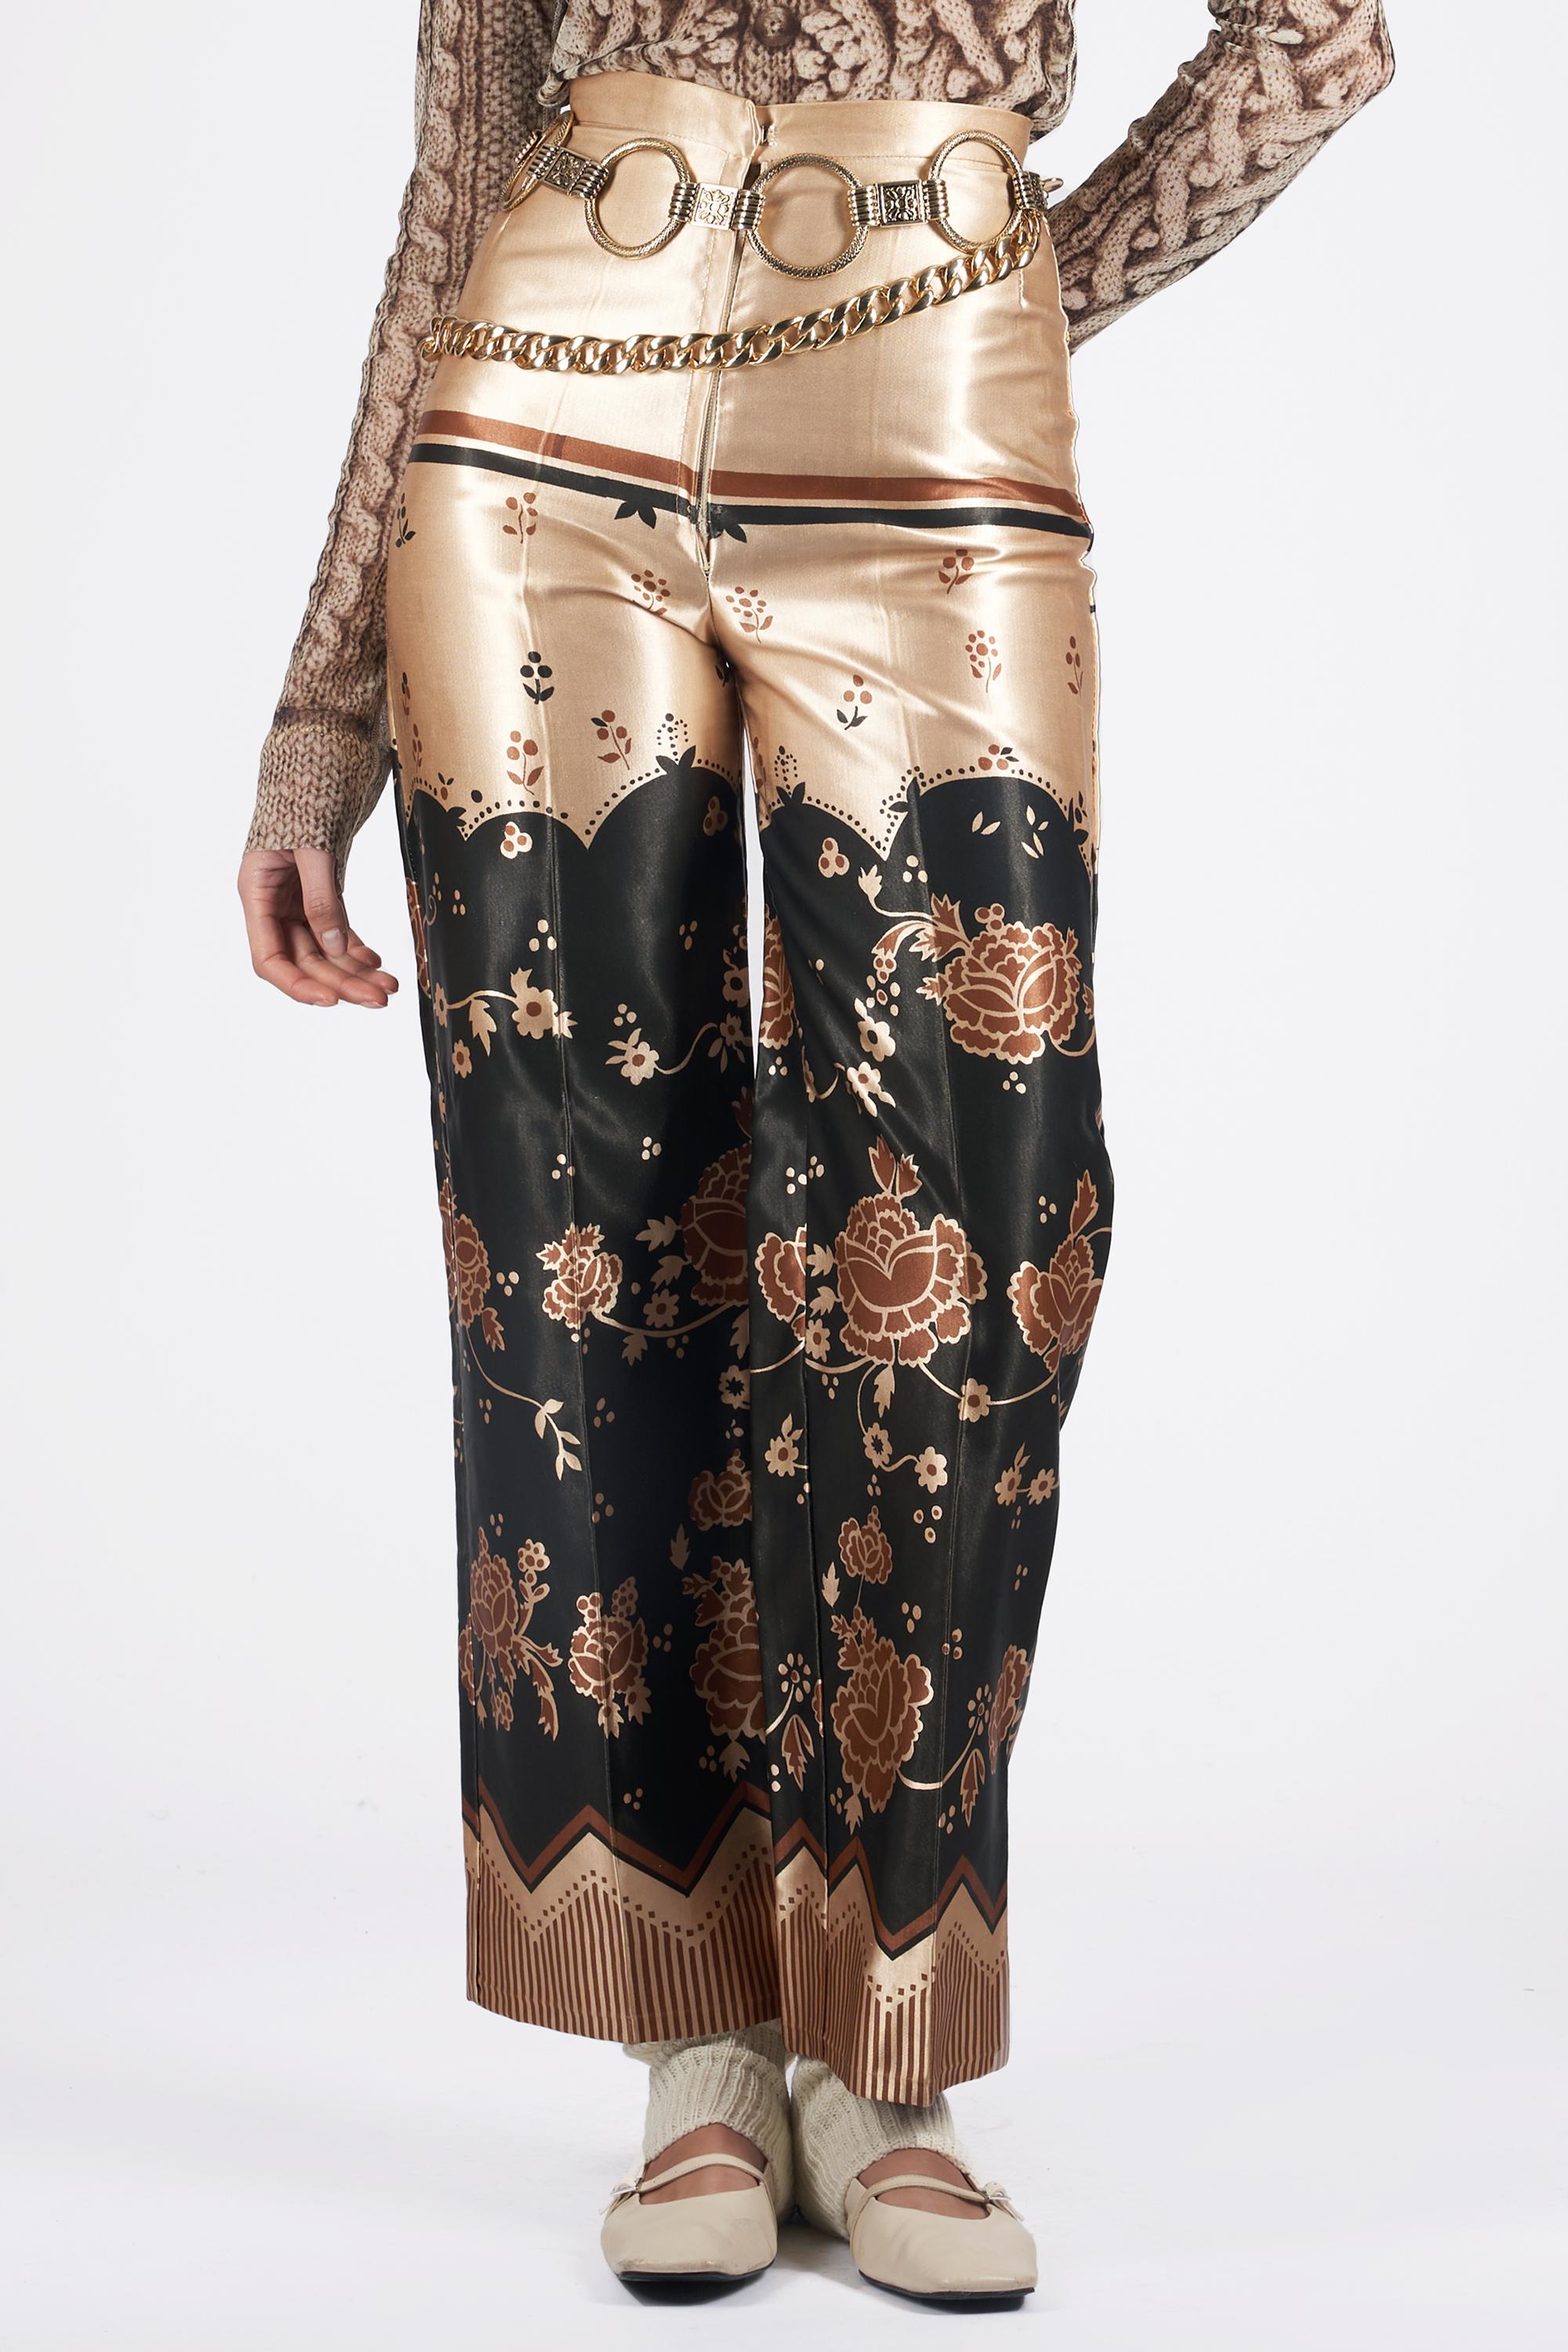 Nous sommes ravis de vous présenter cet emblématique  Ossie Clark 1969 pantalon en satin imprimé floral. Silhouette à taille haute et jambes larges, beige avec imprimé floral noir et marron, fermeture à glissière sur le devant et crochet dissimulé